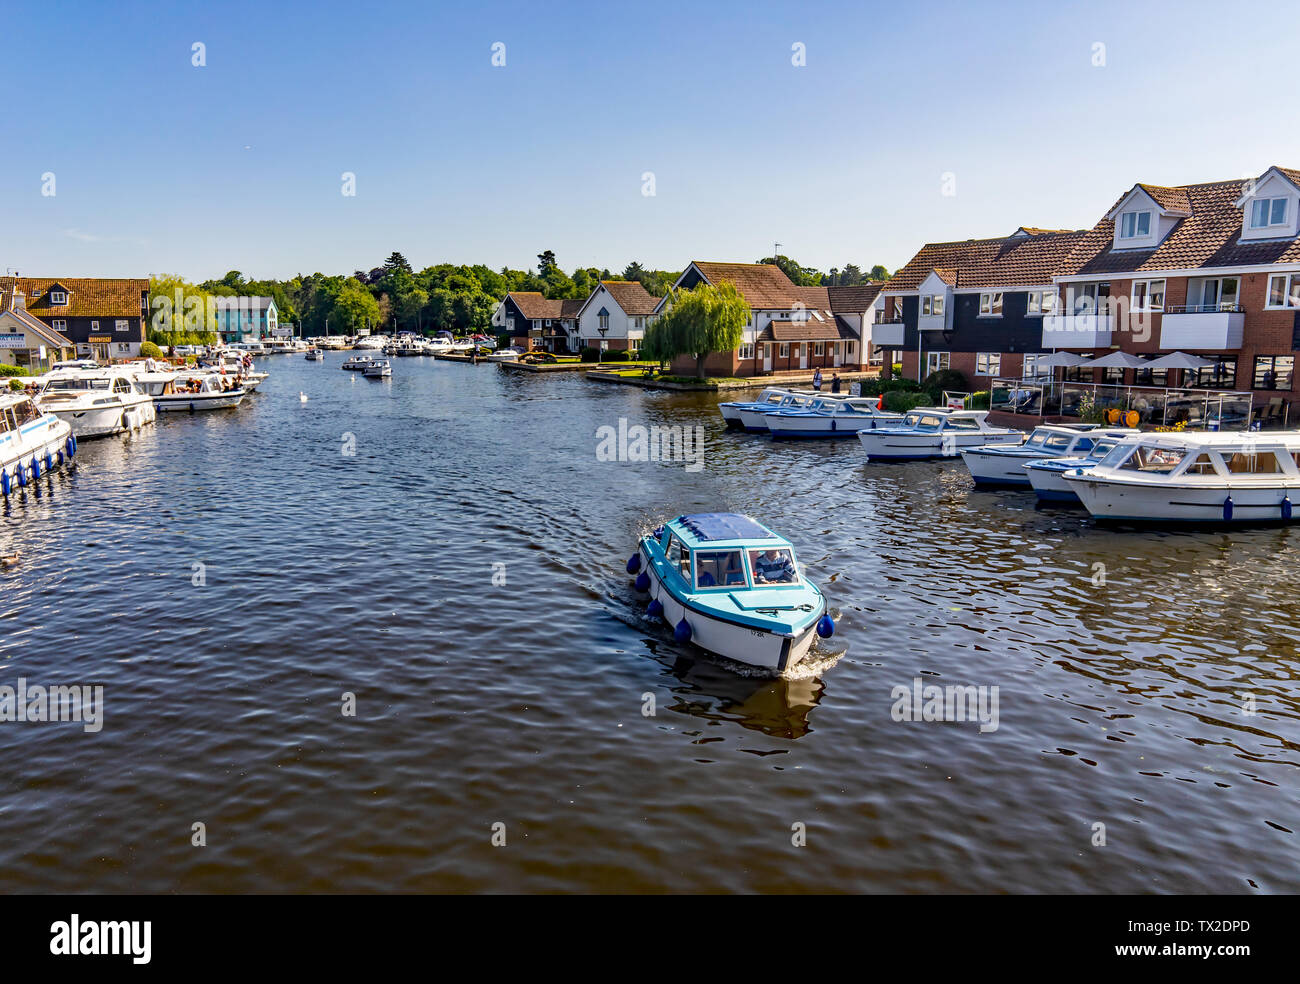 Une vue sur la rivière Bure dans le village de Wroxham montrant non seulement les bateaux de location, location de vacances et hébergement en bord de rivière mais les touristes enjoyi Banque D'Images